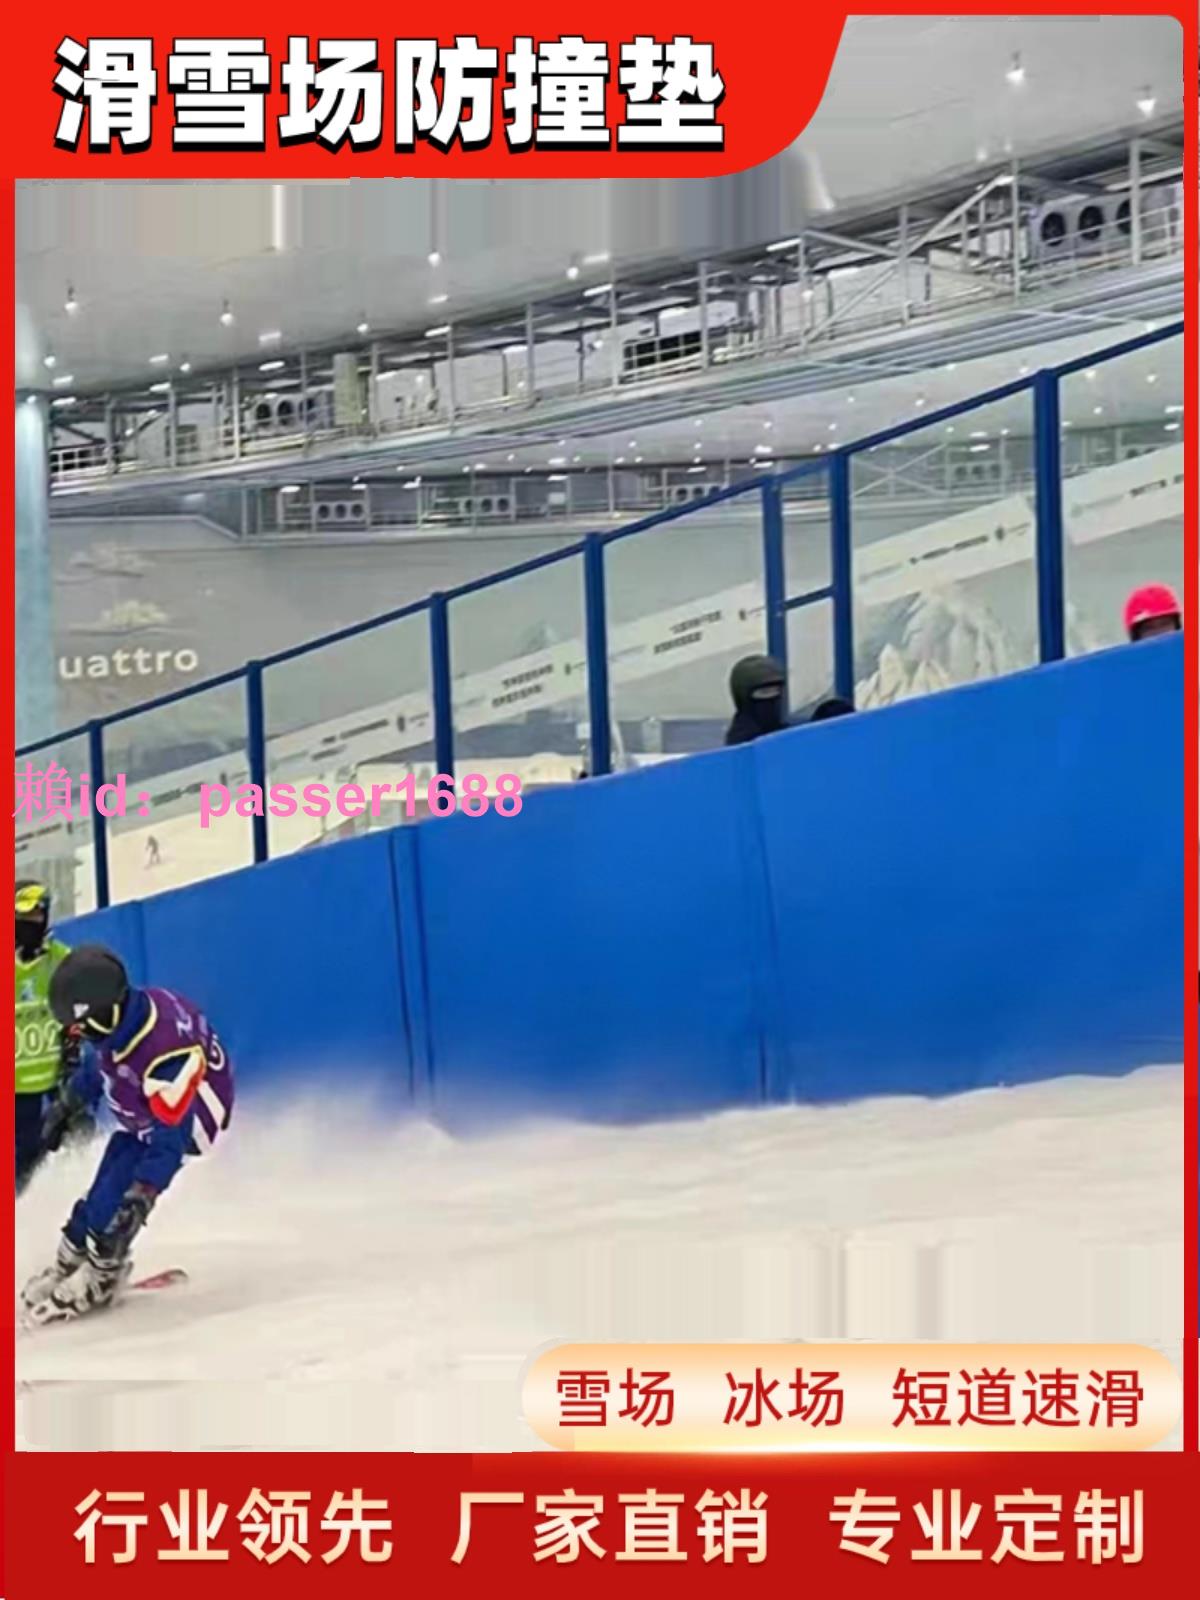 滑雪場防撞保護墊短道速滑防護墊攀巖場溜冰場雪場海綿防撞保護墊